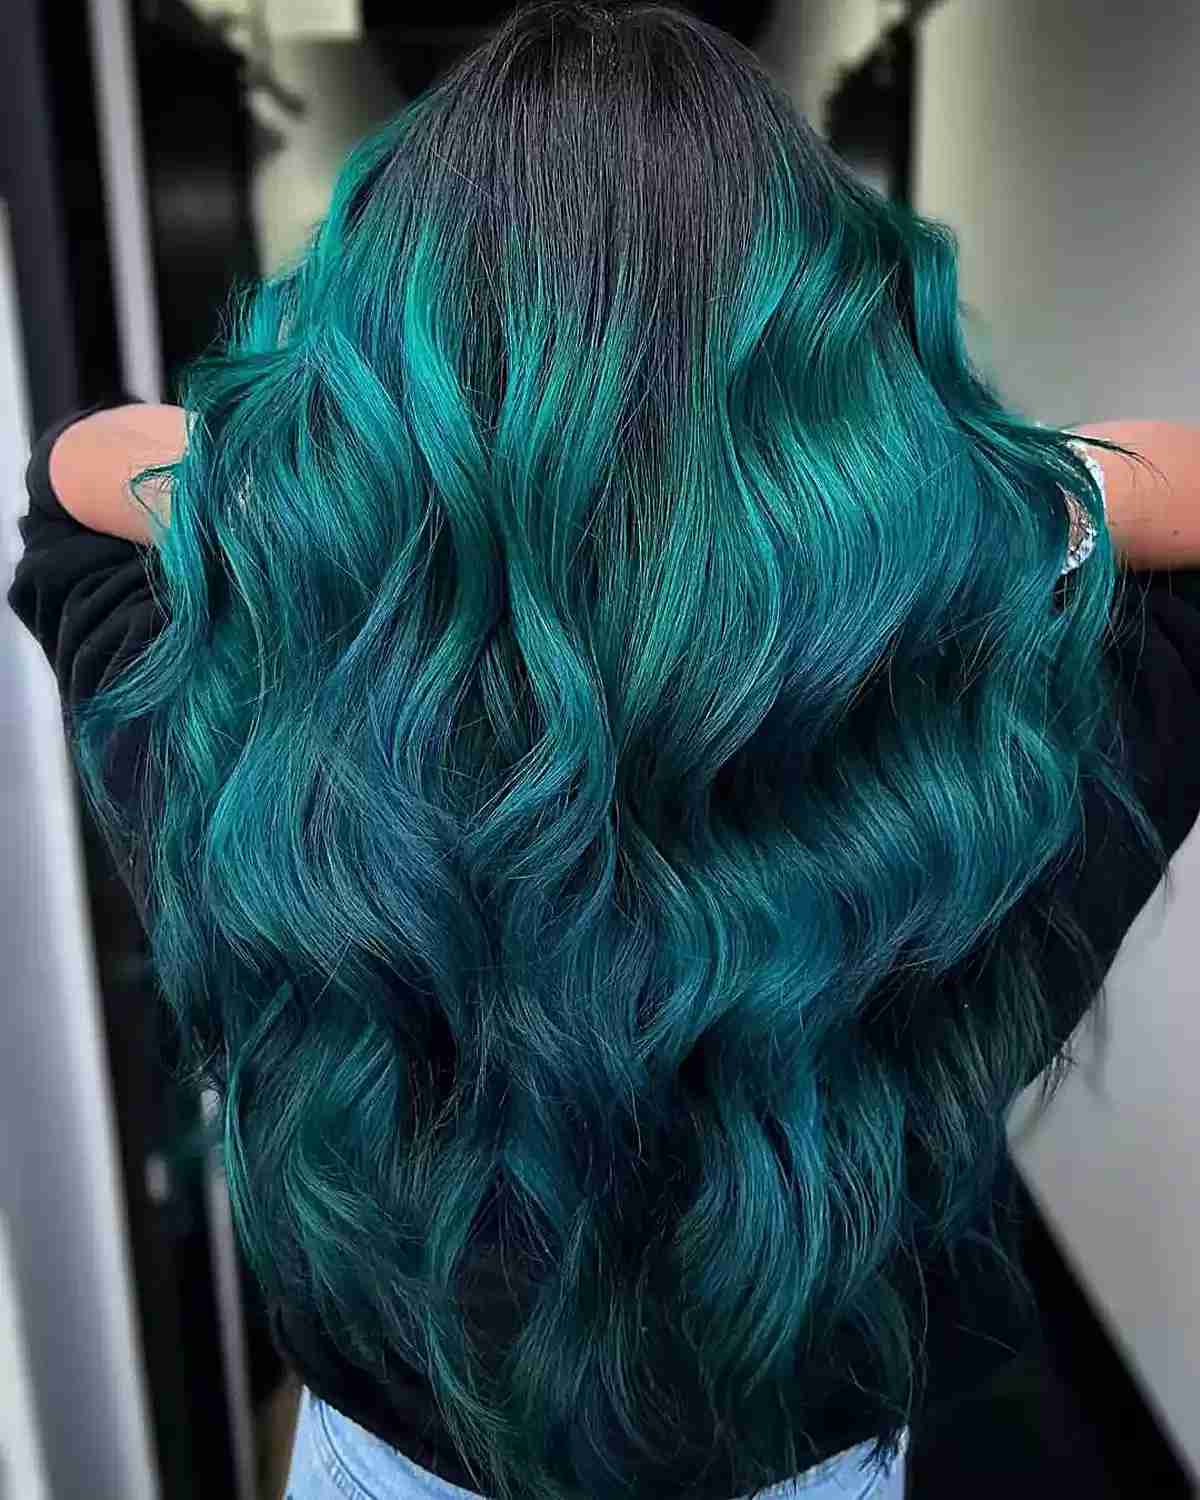 Mermaid Ombre Hair Mermaid Extensions Teal Blue Hair Turquoise Extensions  Black to Teal Ombre   Haarfarben Haarfarbe balayage Mittellange haare  frisuren einfach